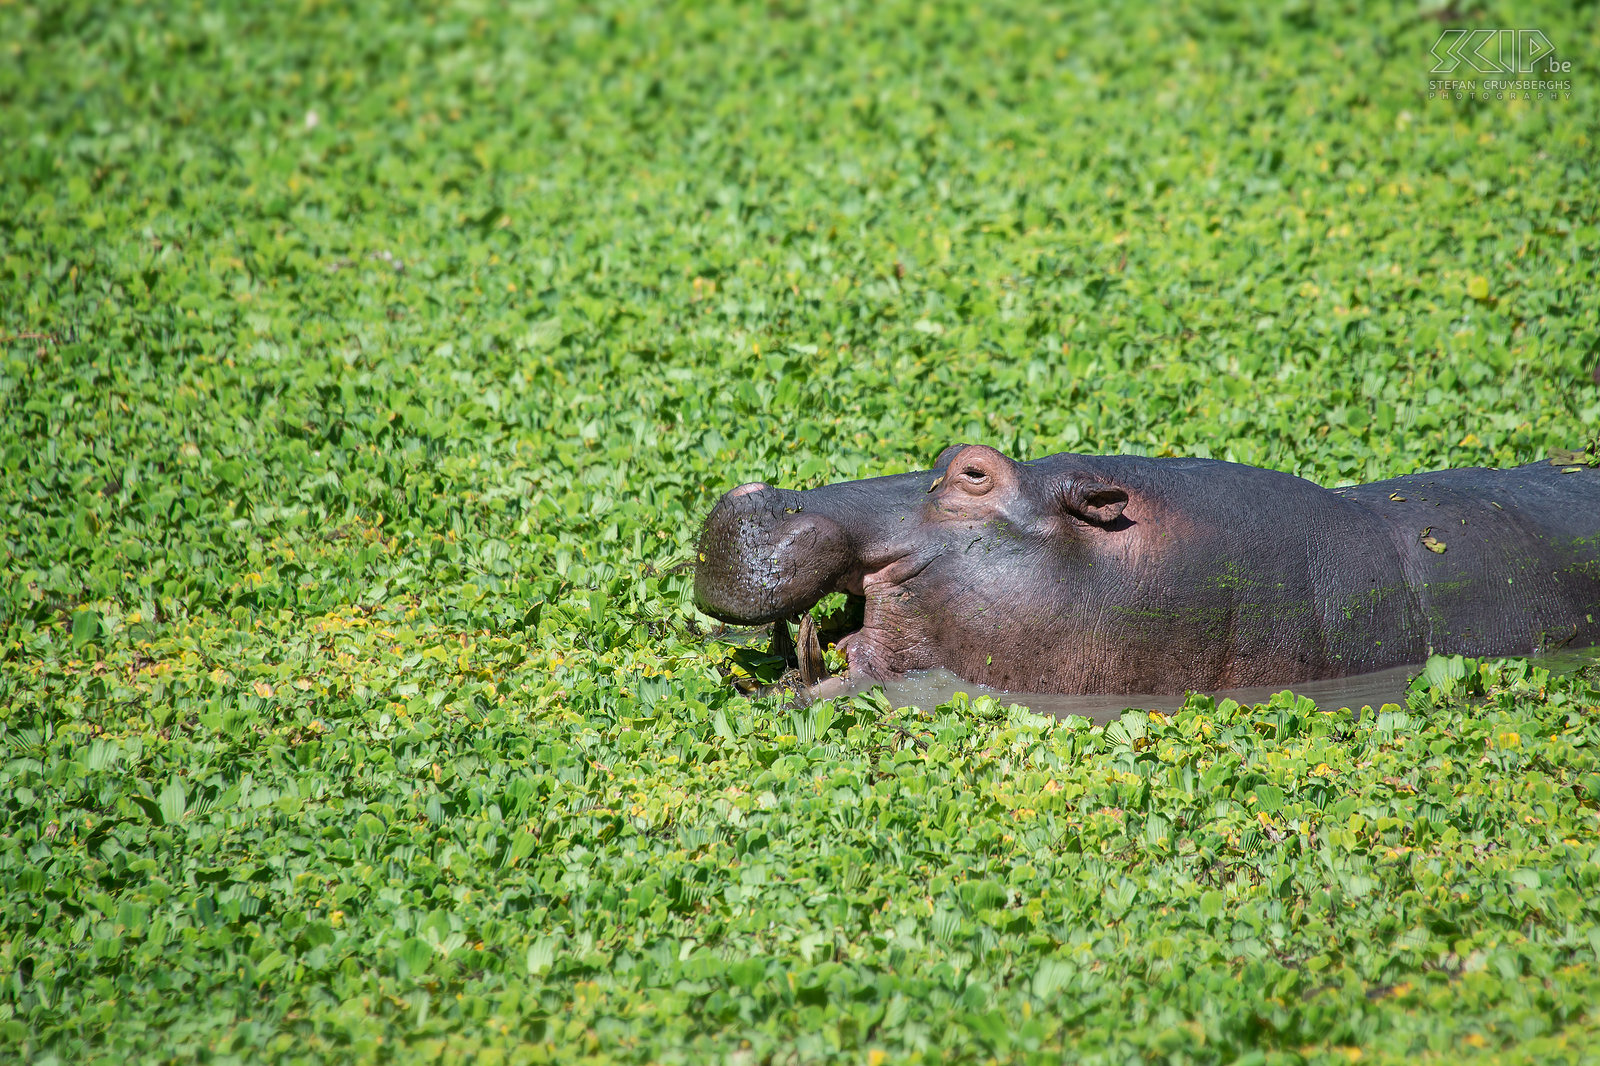 South Luangwa - Nijlpaard tussen nijlsla Een nijlpaard rustig knabbelend op de nijlsla in een van de plassen in South Luangwa. Er leven zo’n vijftig nijlpaarden per kilometer in de Luangwa rivier. Stefan Cruysberghs